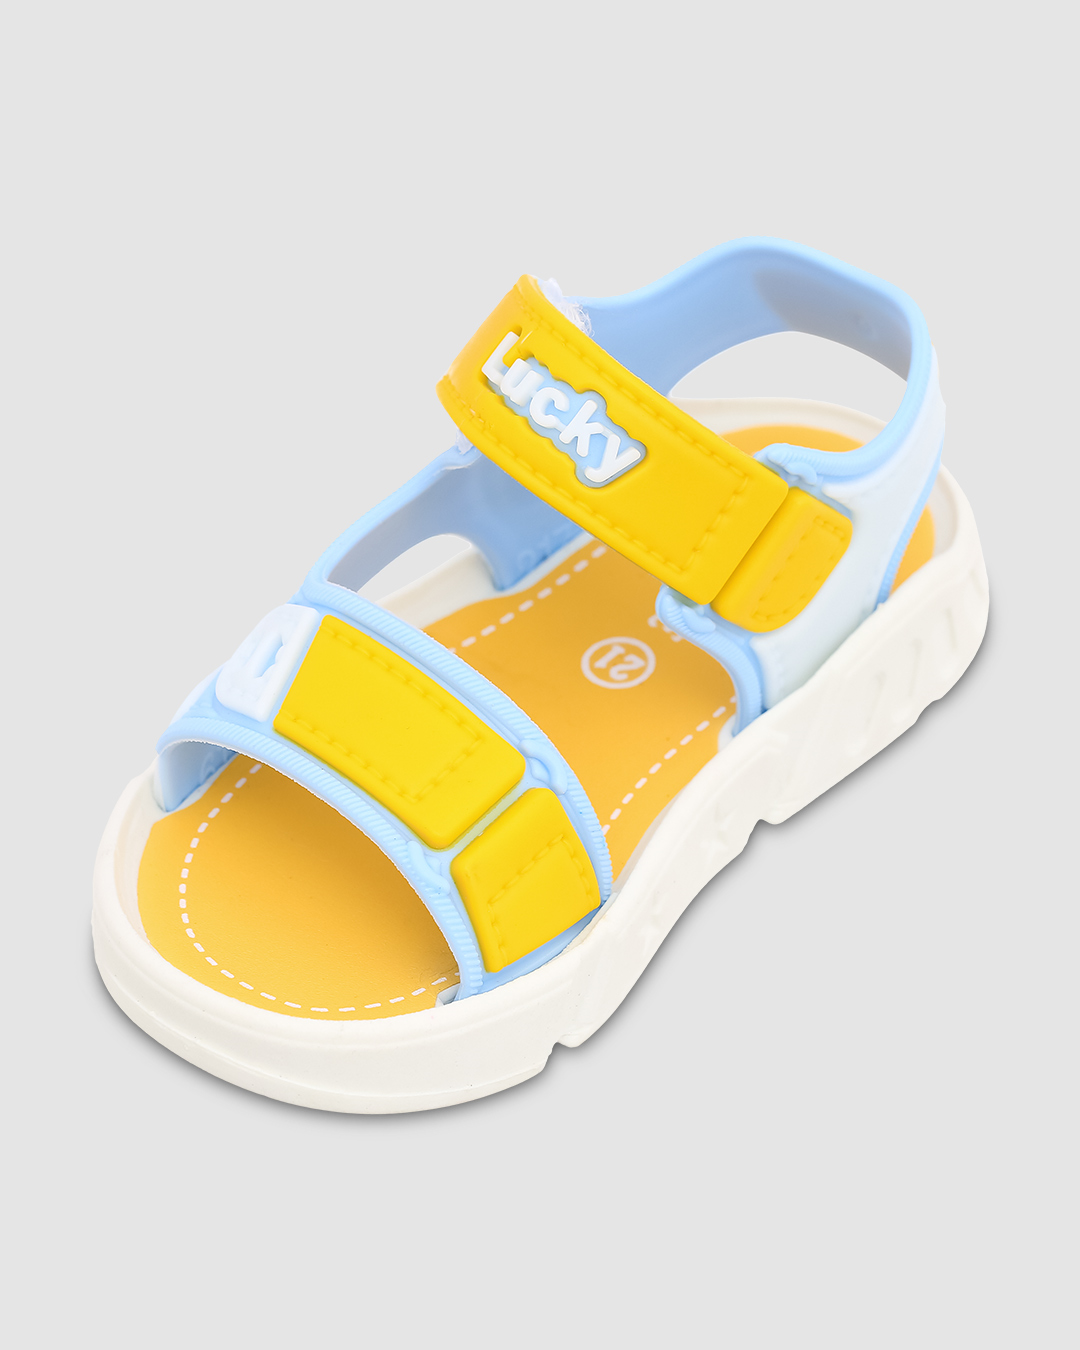 Giày sandal cho bé trai Á Châu Avakids AC34 màu xanh dương - vàng